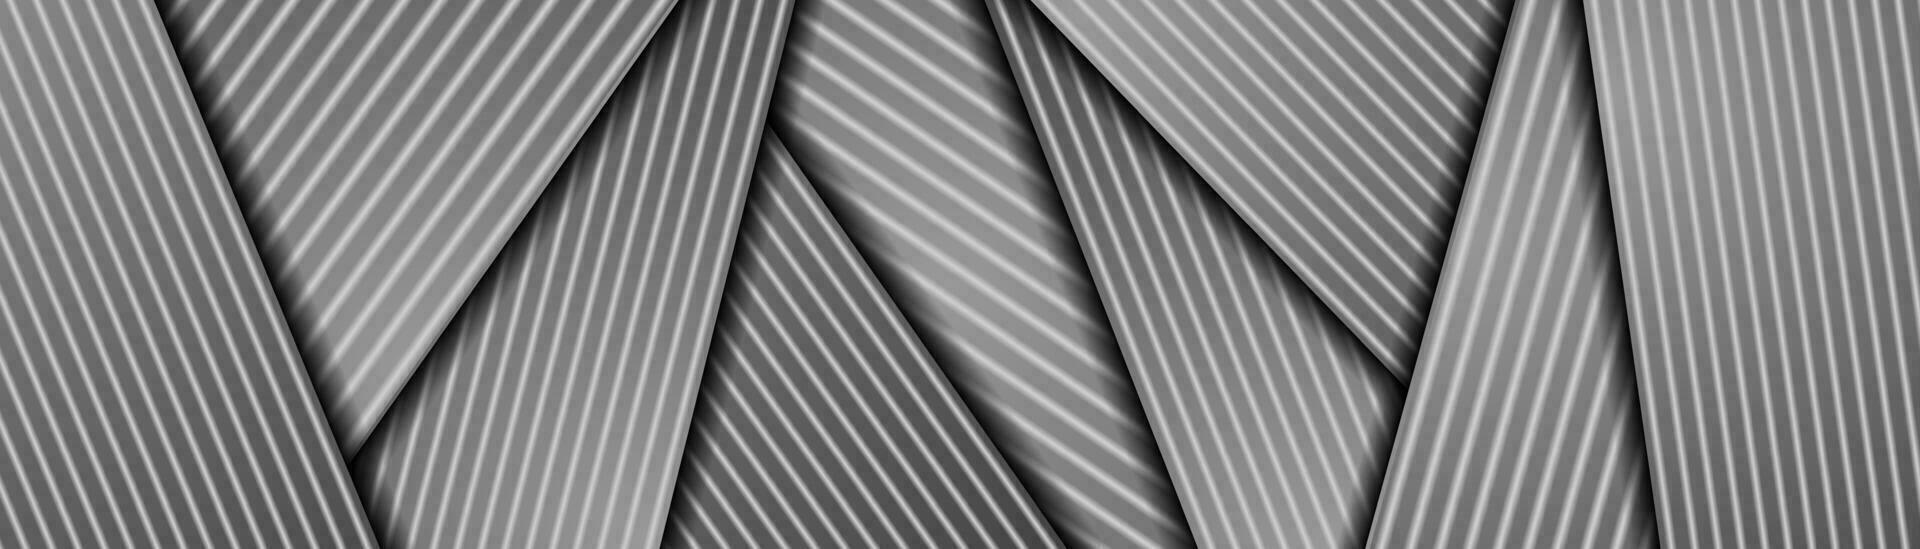 abstrait gris monochrome lisse rayures entreprise bannière vecteur